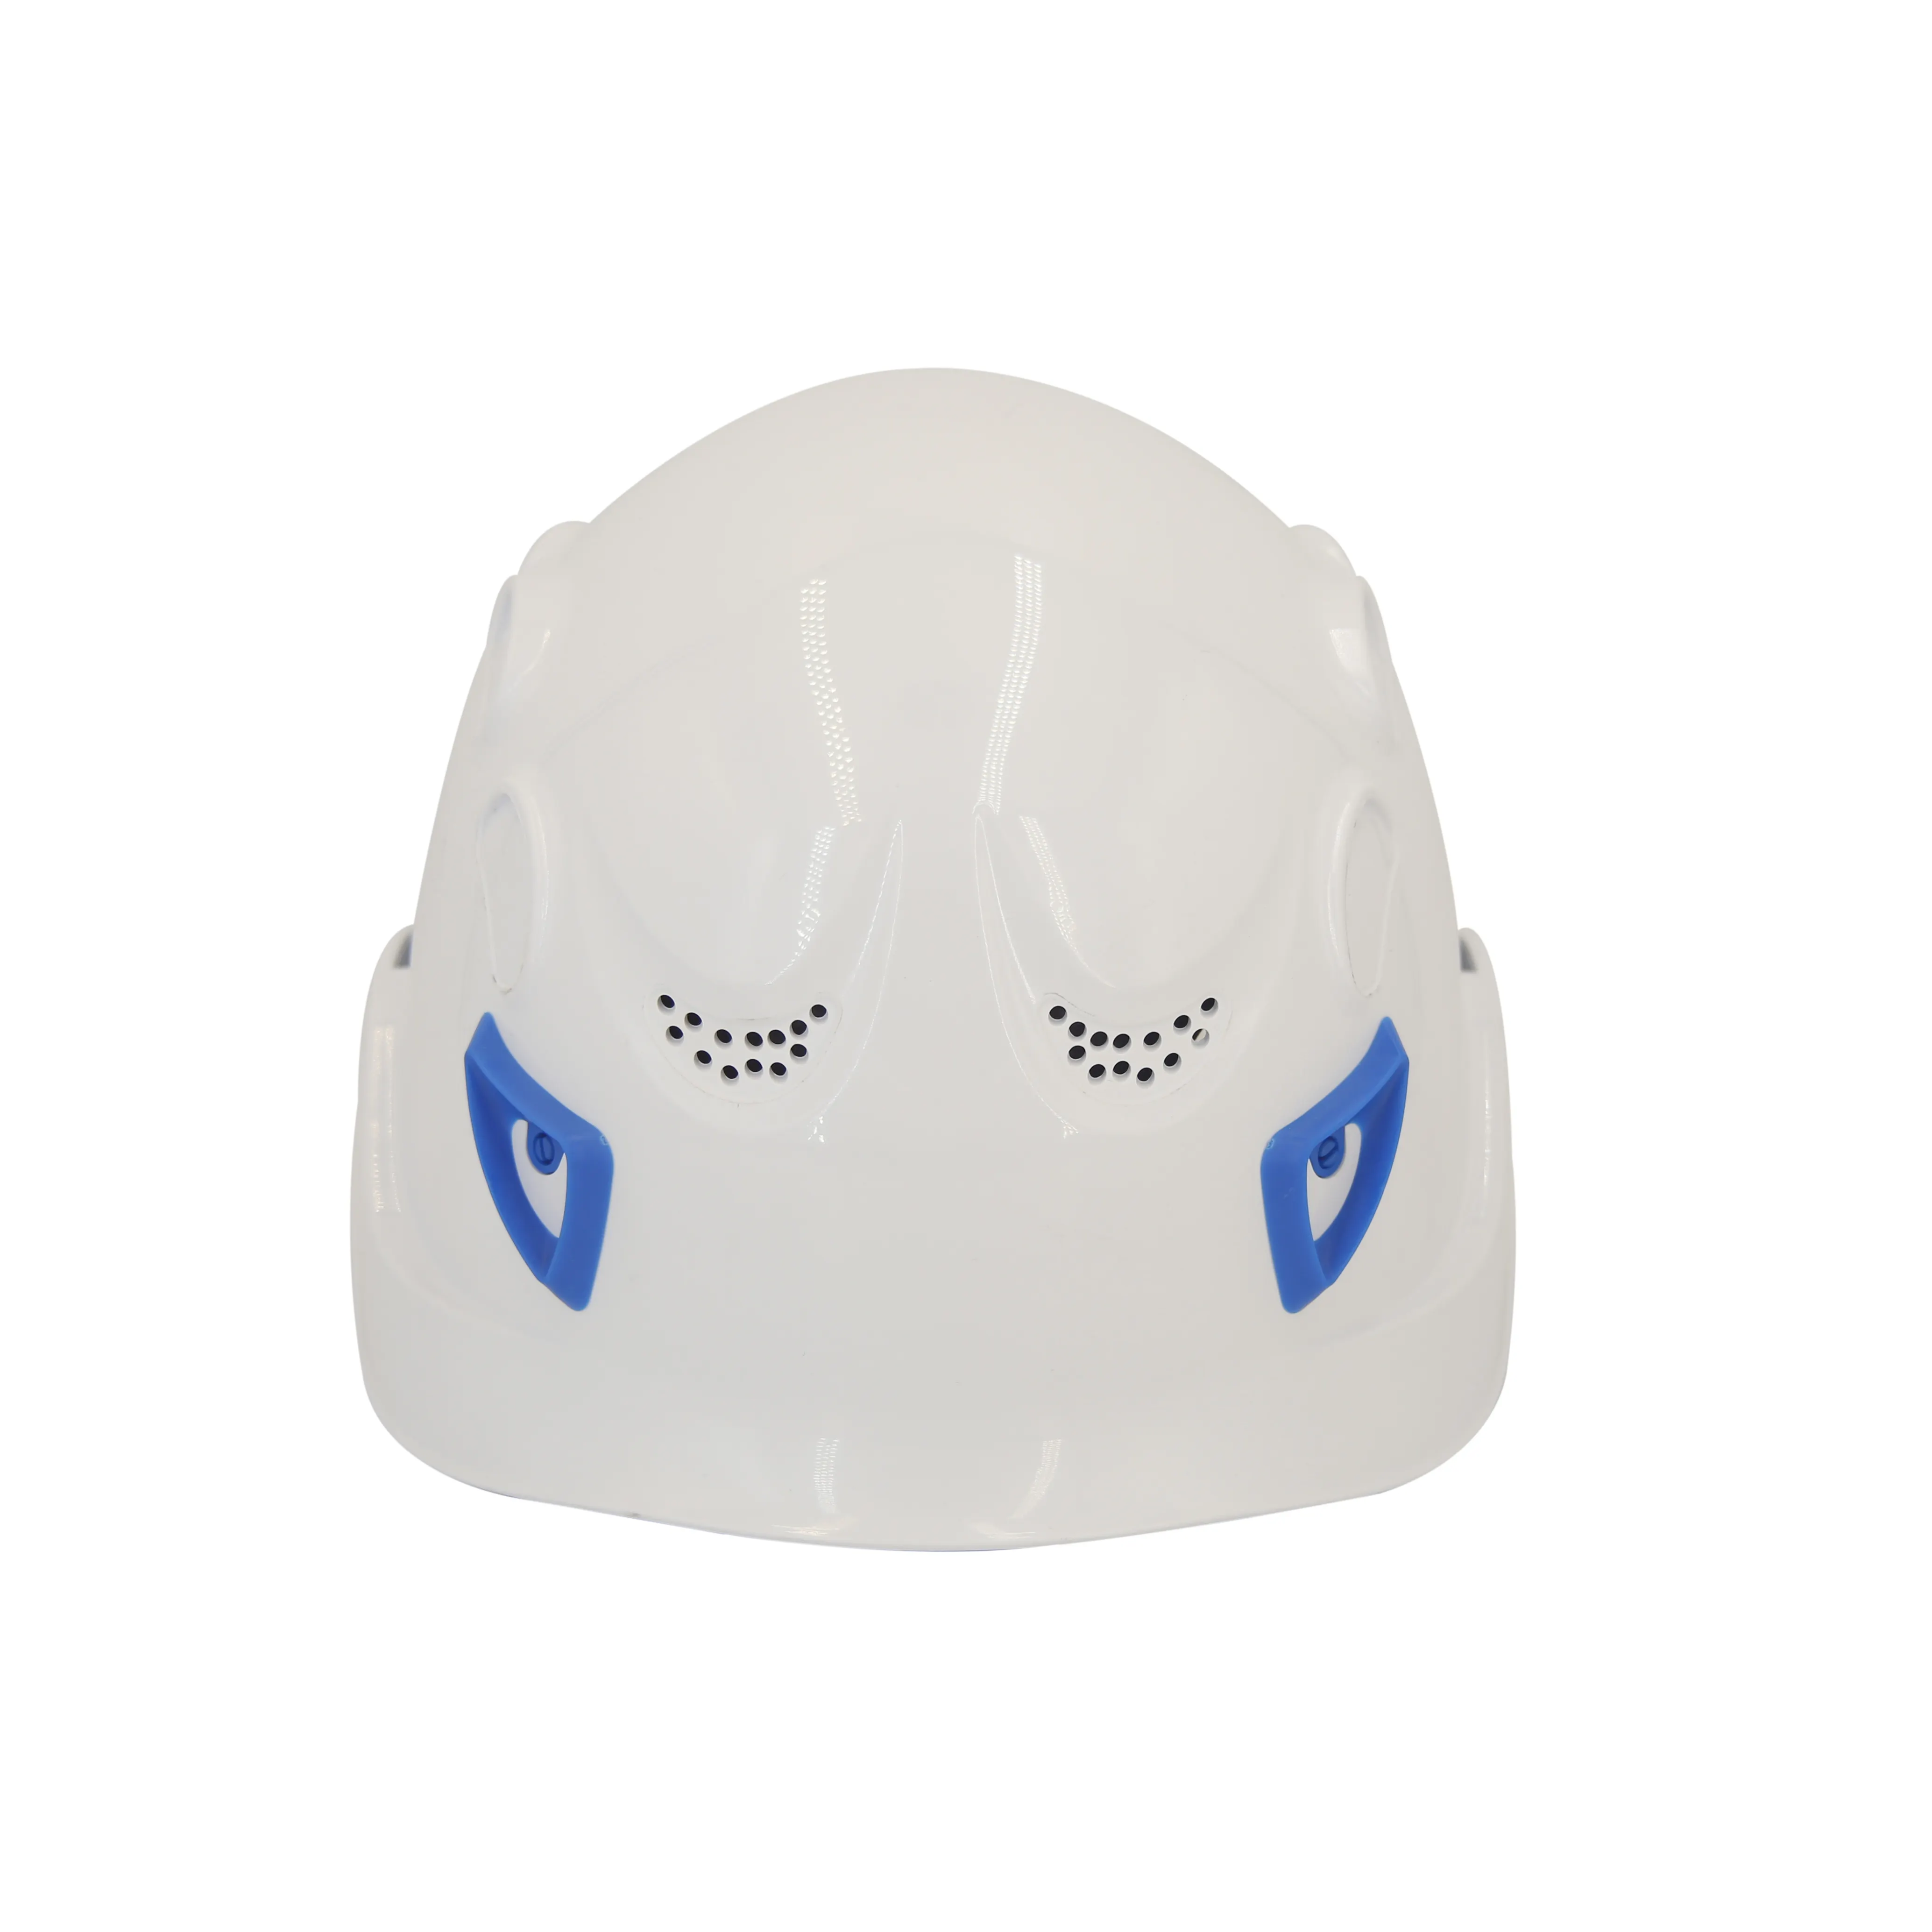 CE 스포츠 사이클링 캡 맞춤형 로고 등산 헬멧 개인 보호 장비 안전 모자